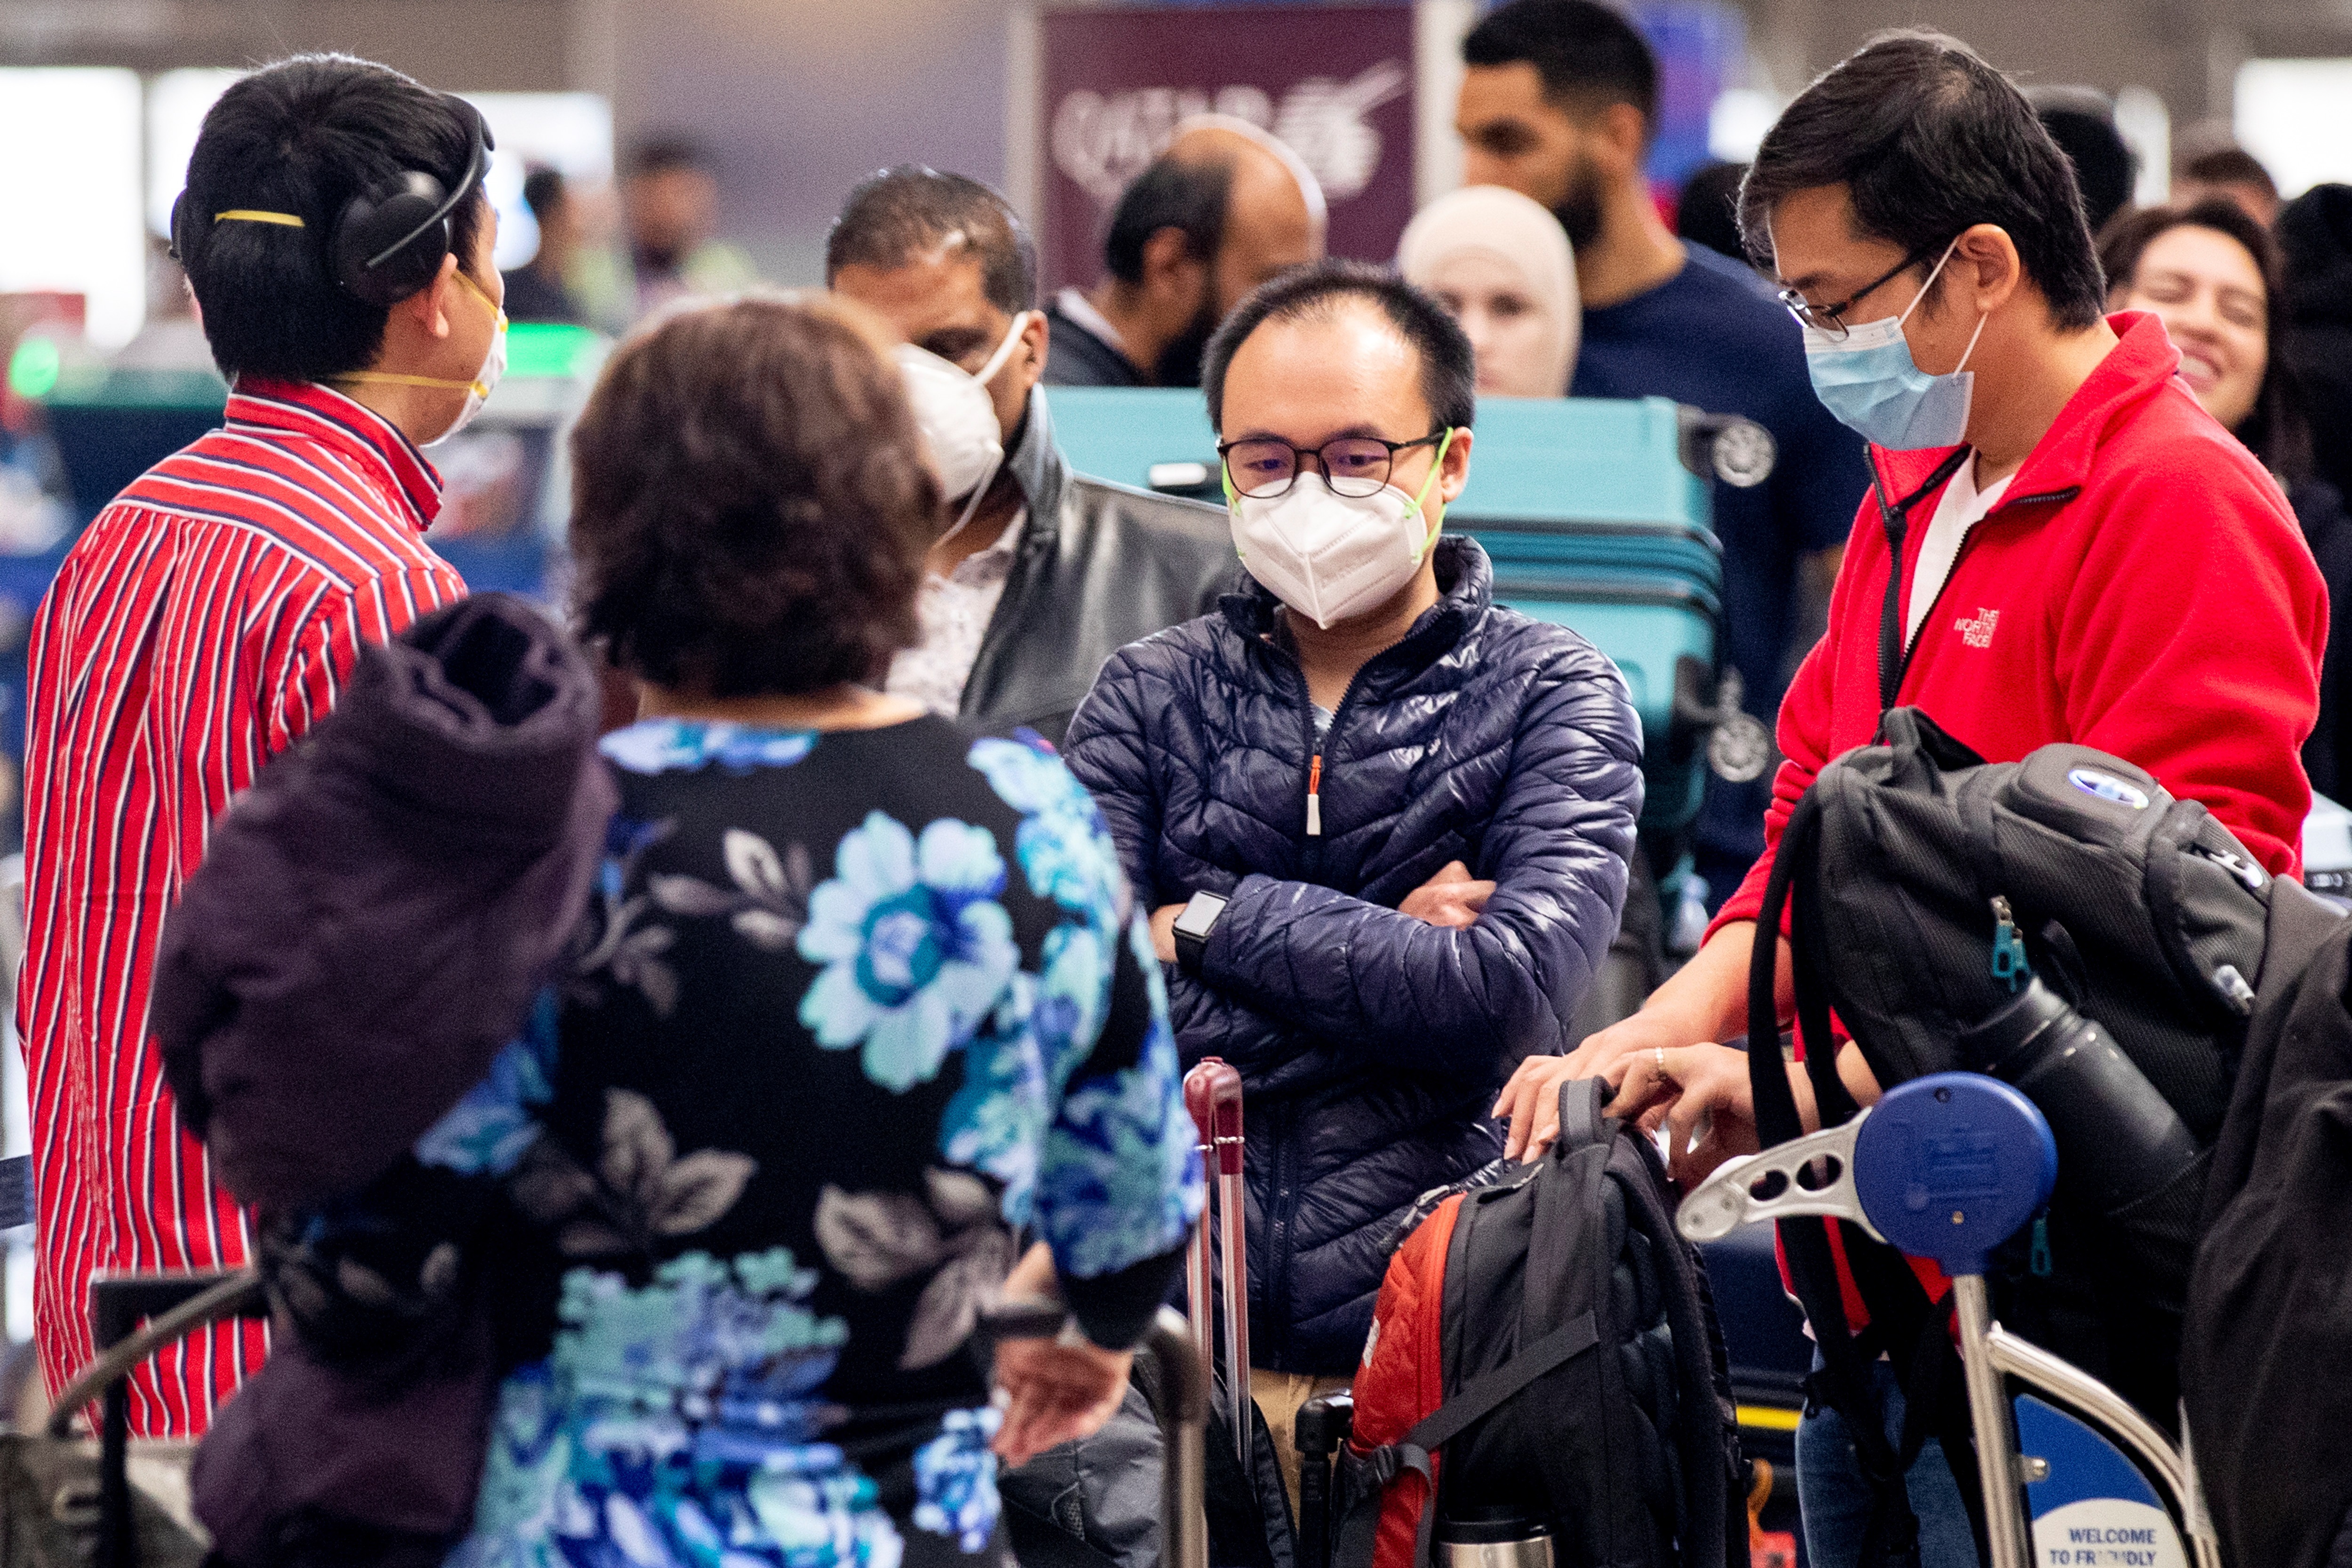 Los aeropuertos europeos califican el coronavirus de “crisis sin precedentes”